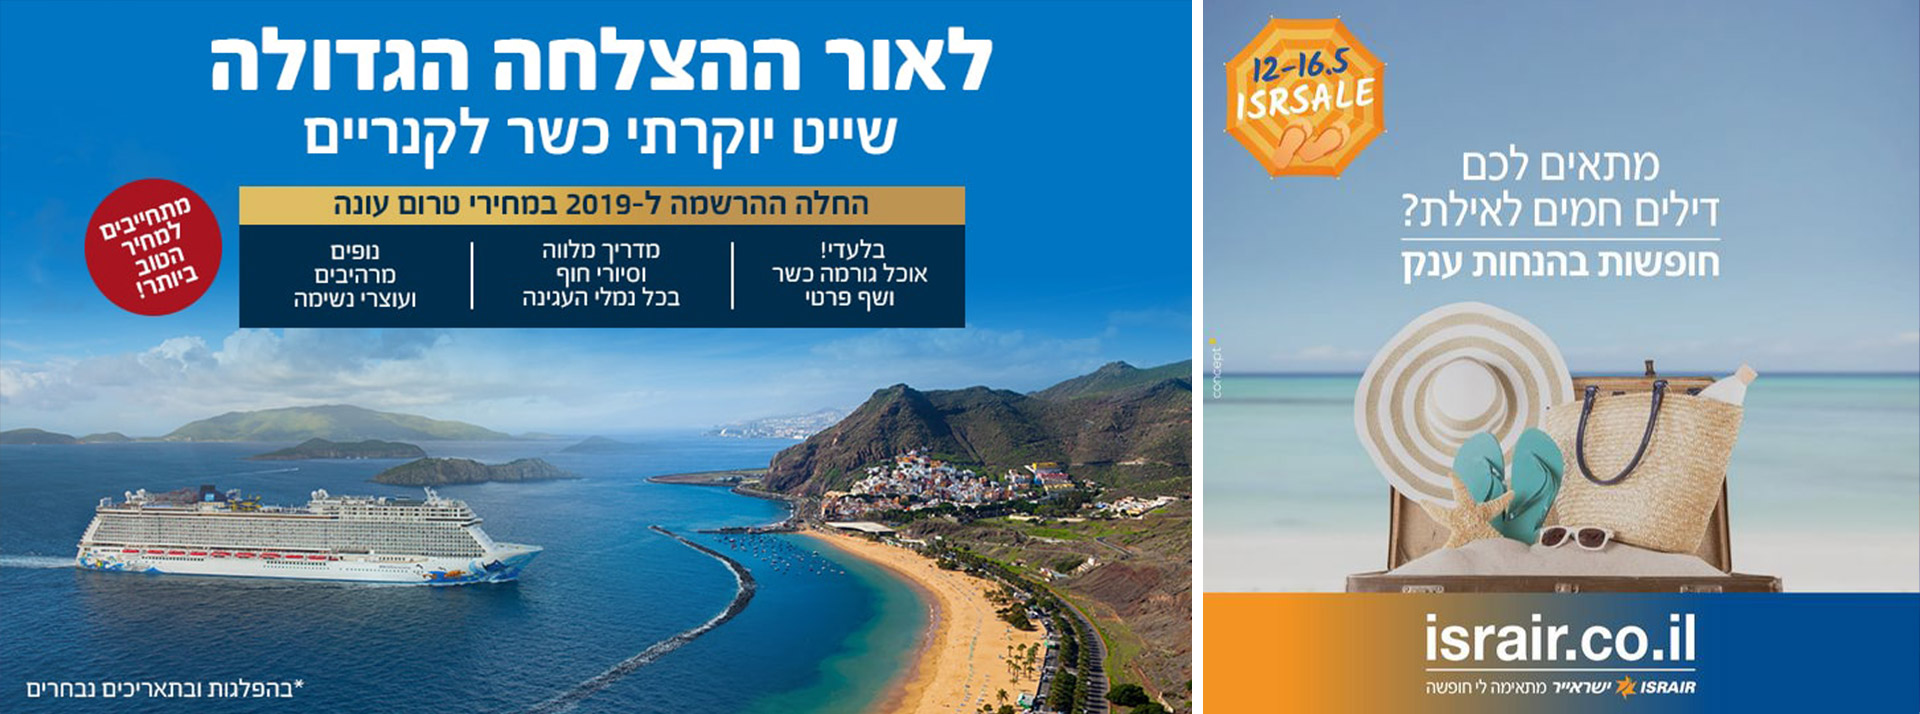 פרסומים לחופשות בישראל